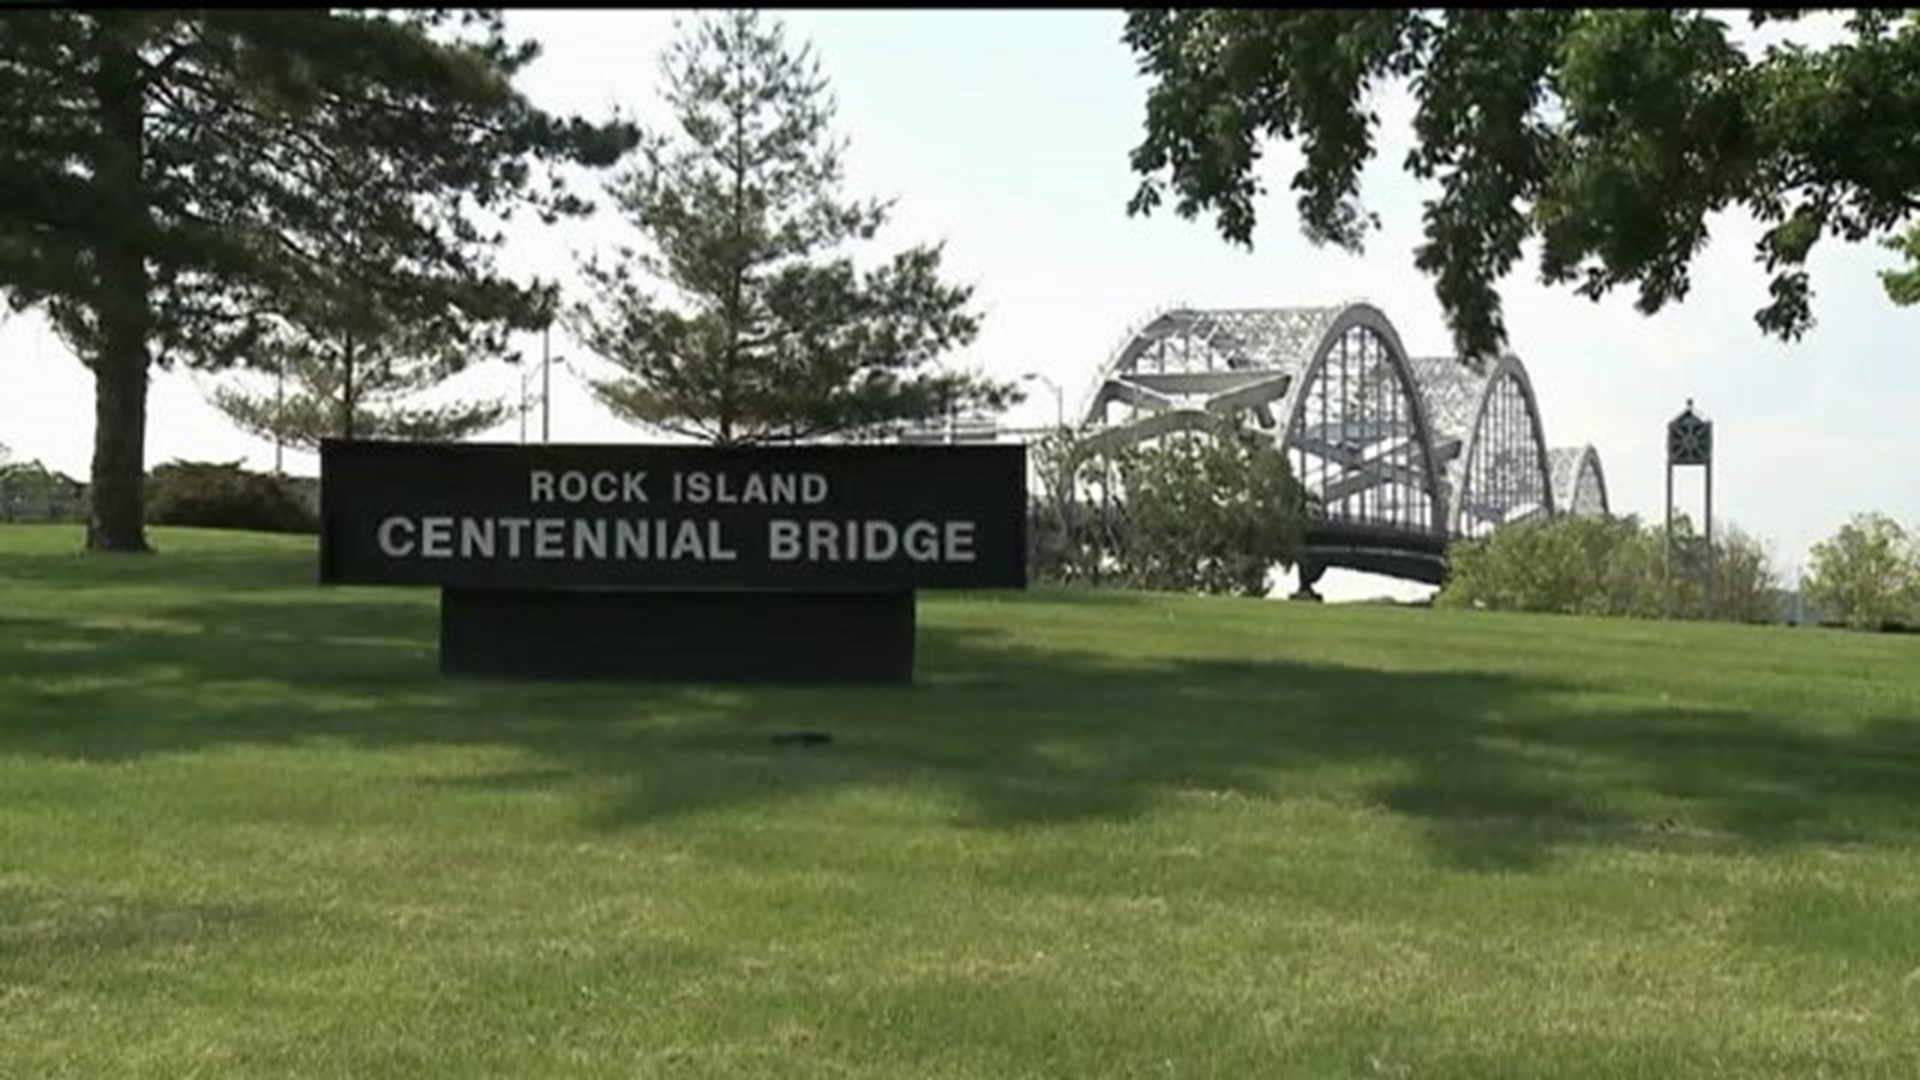 Centennial Bridge to close for repairs